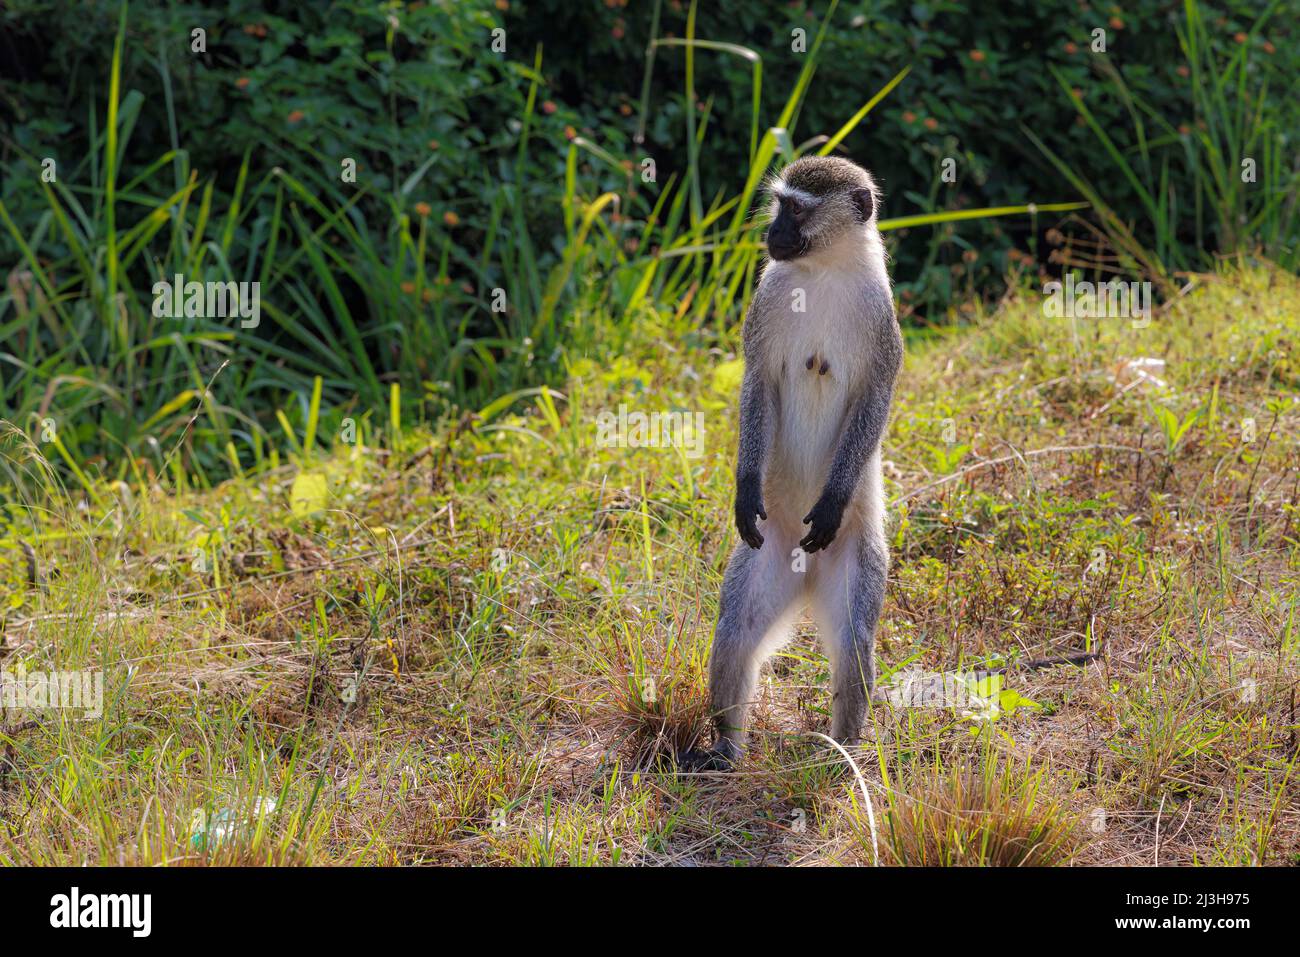 Uganda, Rubirizi district, Katunguru, Queen Elizabeth National Park, vervet monkey Stock Photo